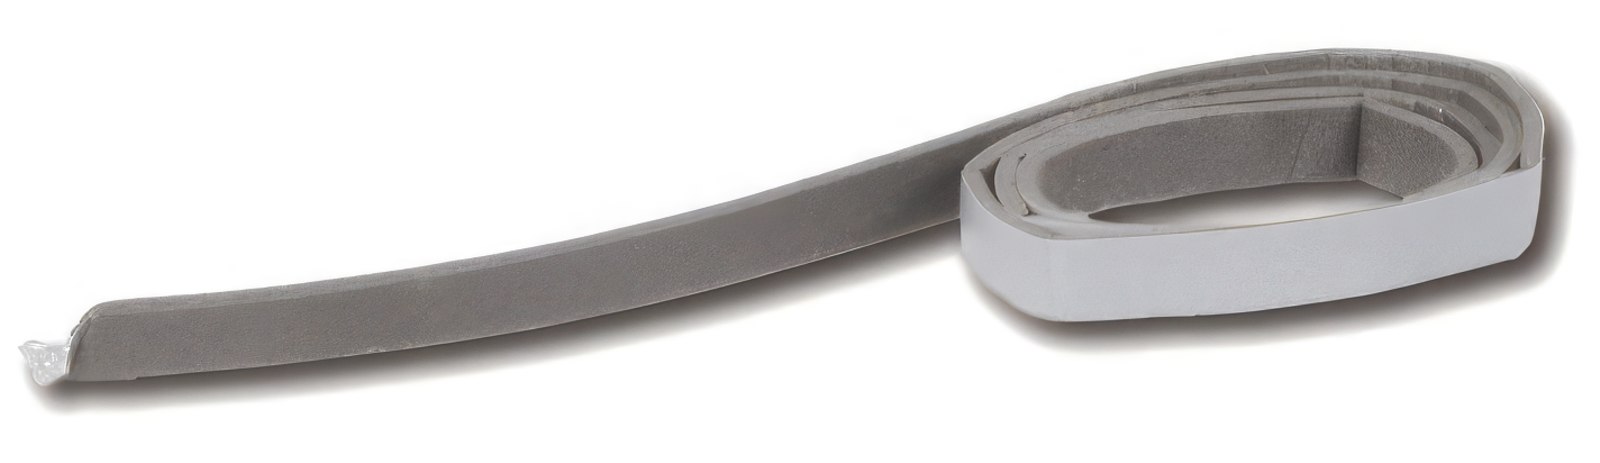 10 Meter - Dichtband 2 x 9 mm grau Schaumstoffband selbstklebend zur Lautsprecherabdichtung (Meterware)